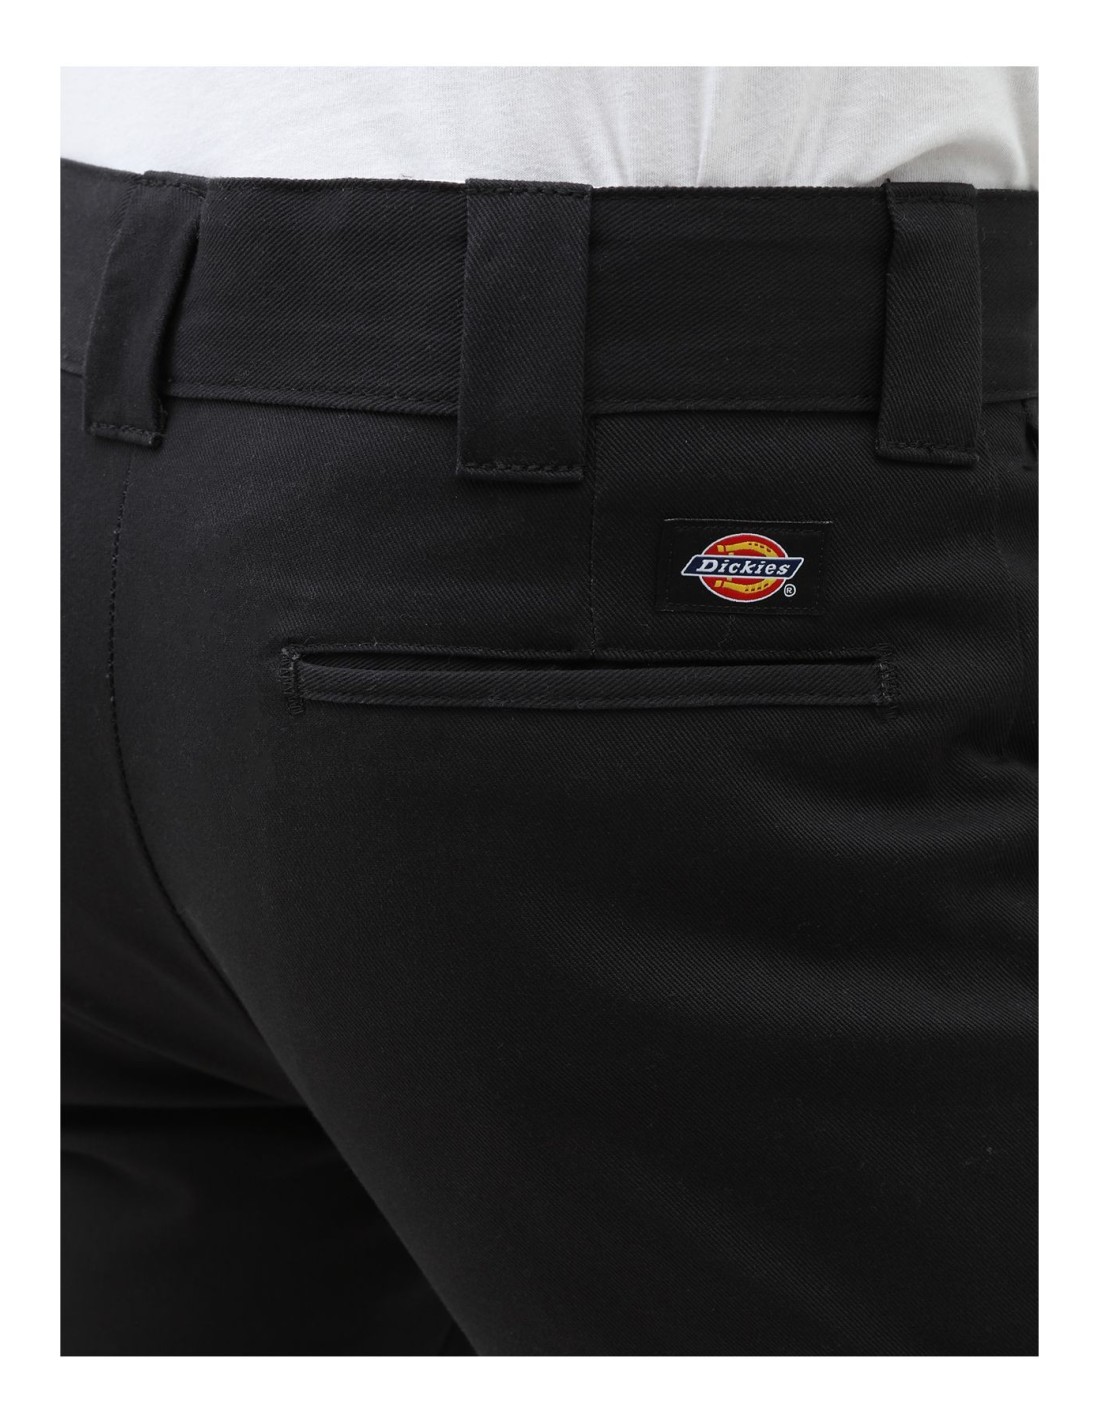 Pantalon Dickies Original 803  SLIM Fit  Work Pant BK